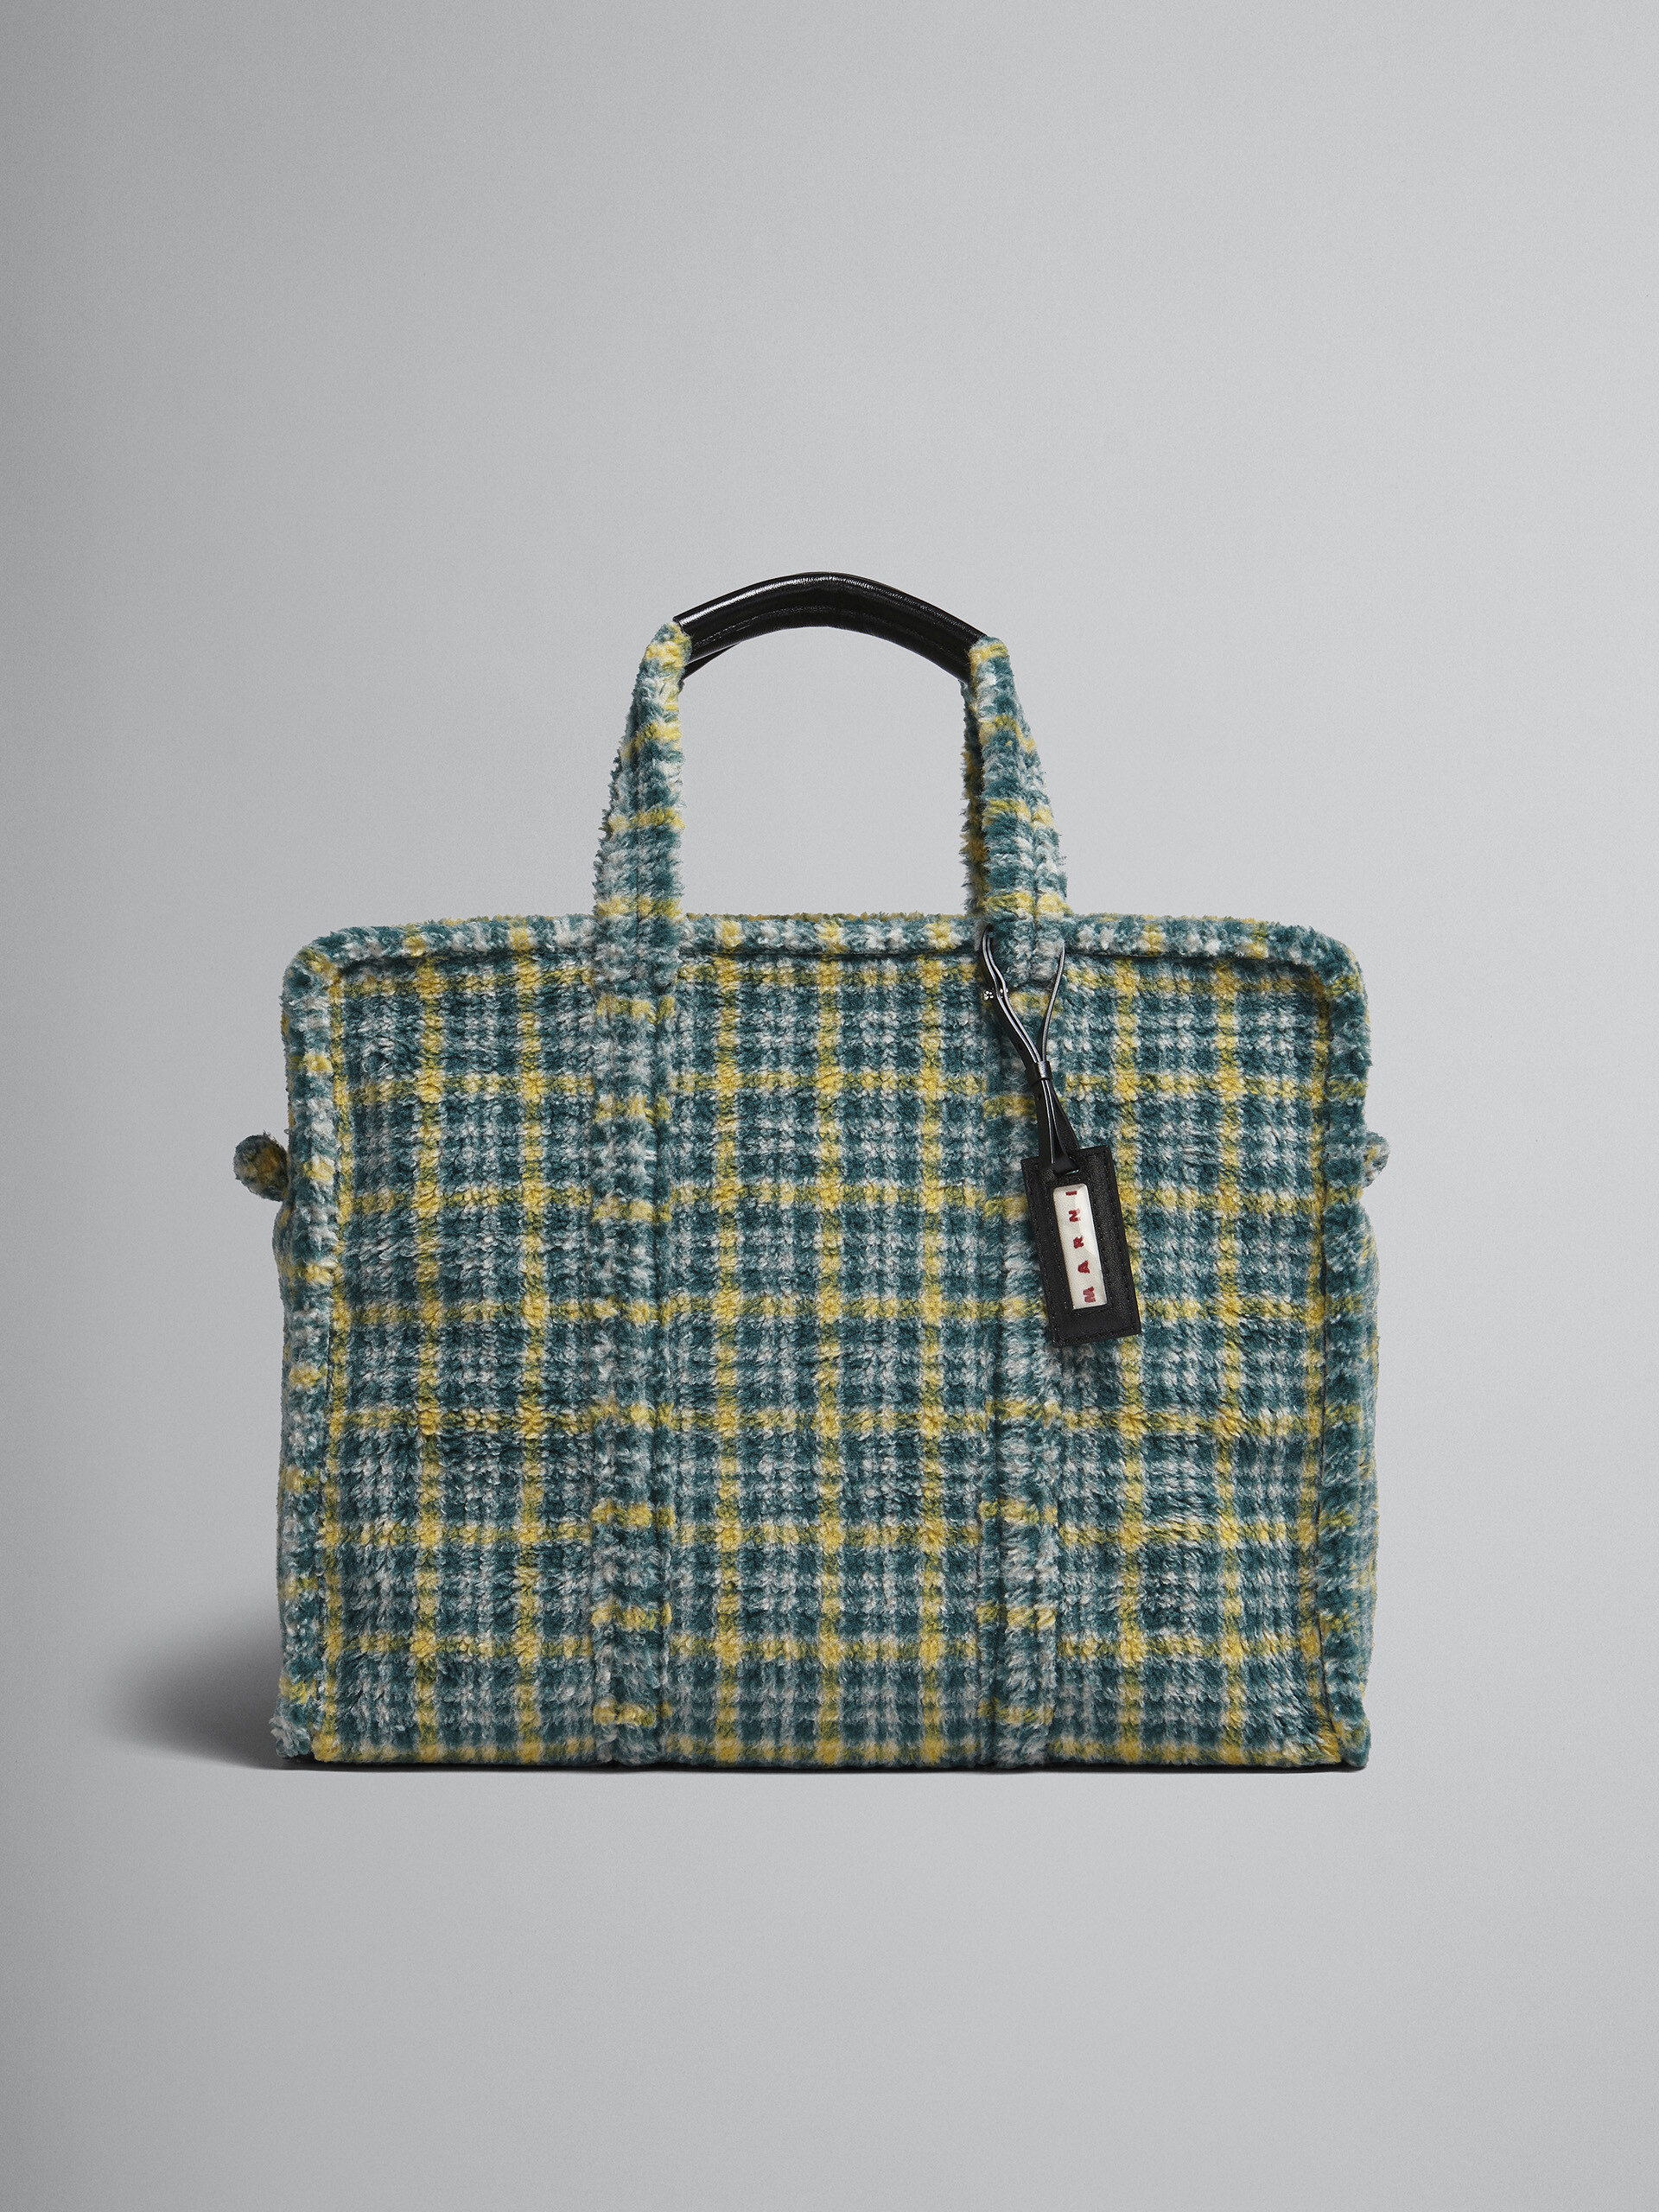 Reisetasche aus grün kariertem Stoff - Shopper - Image 1